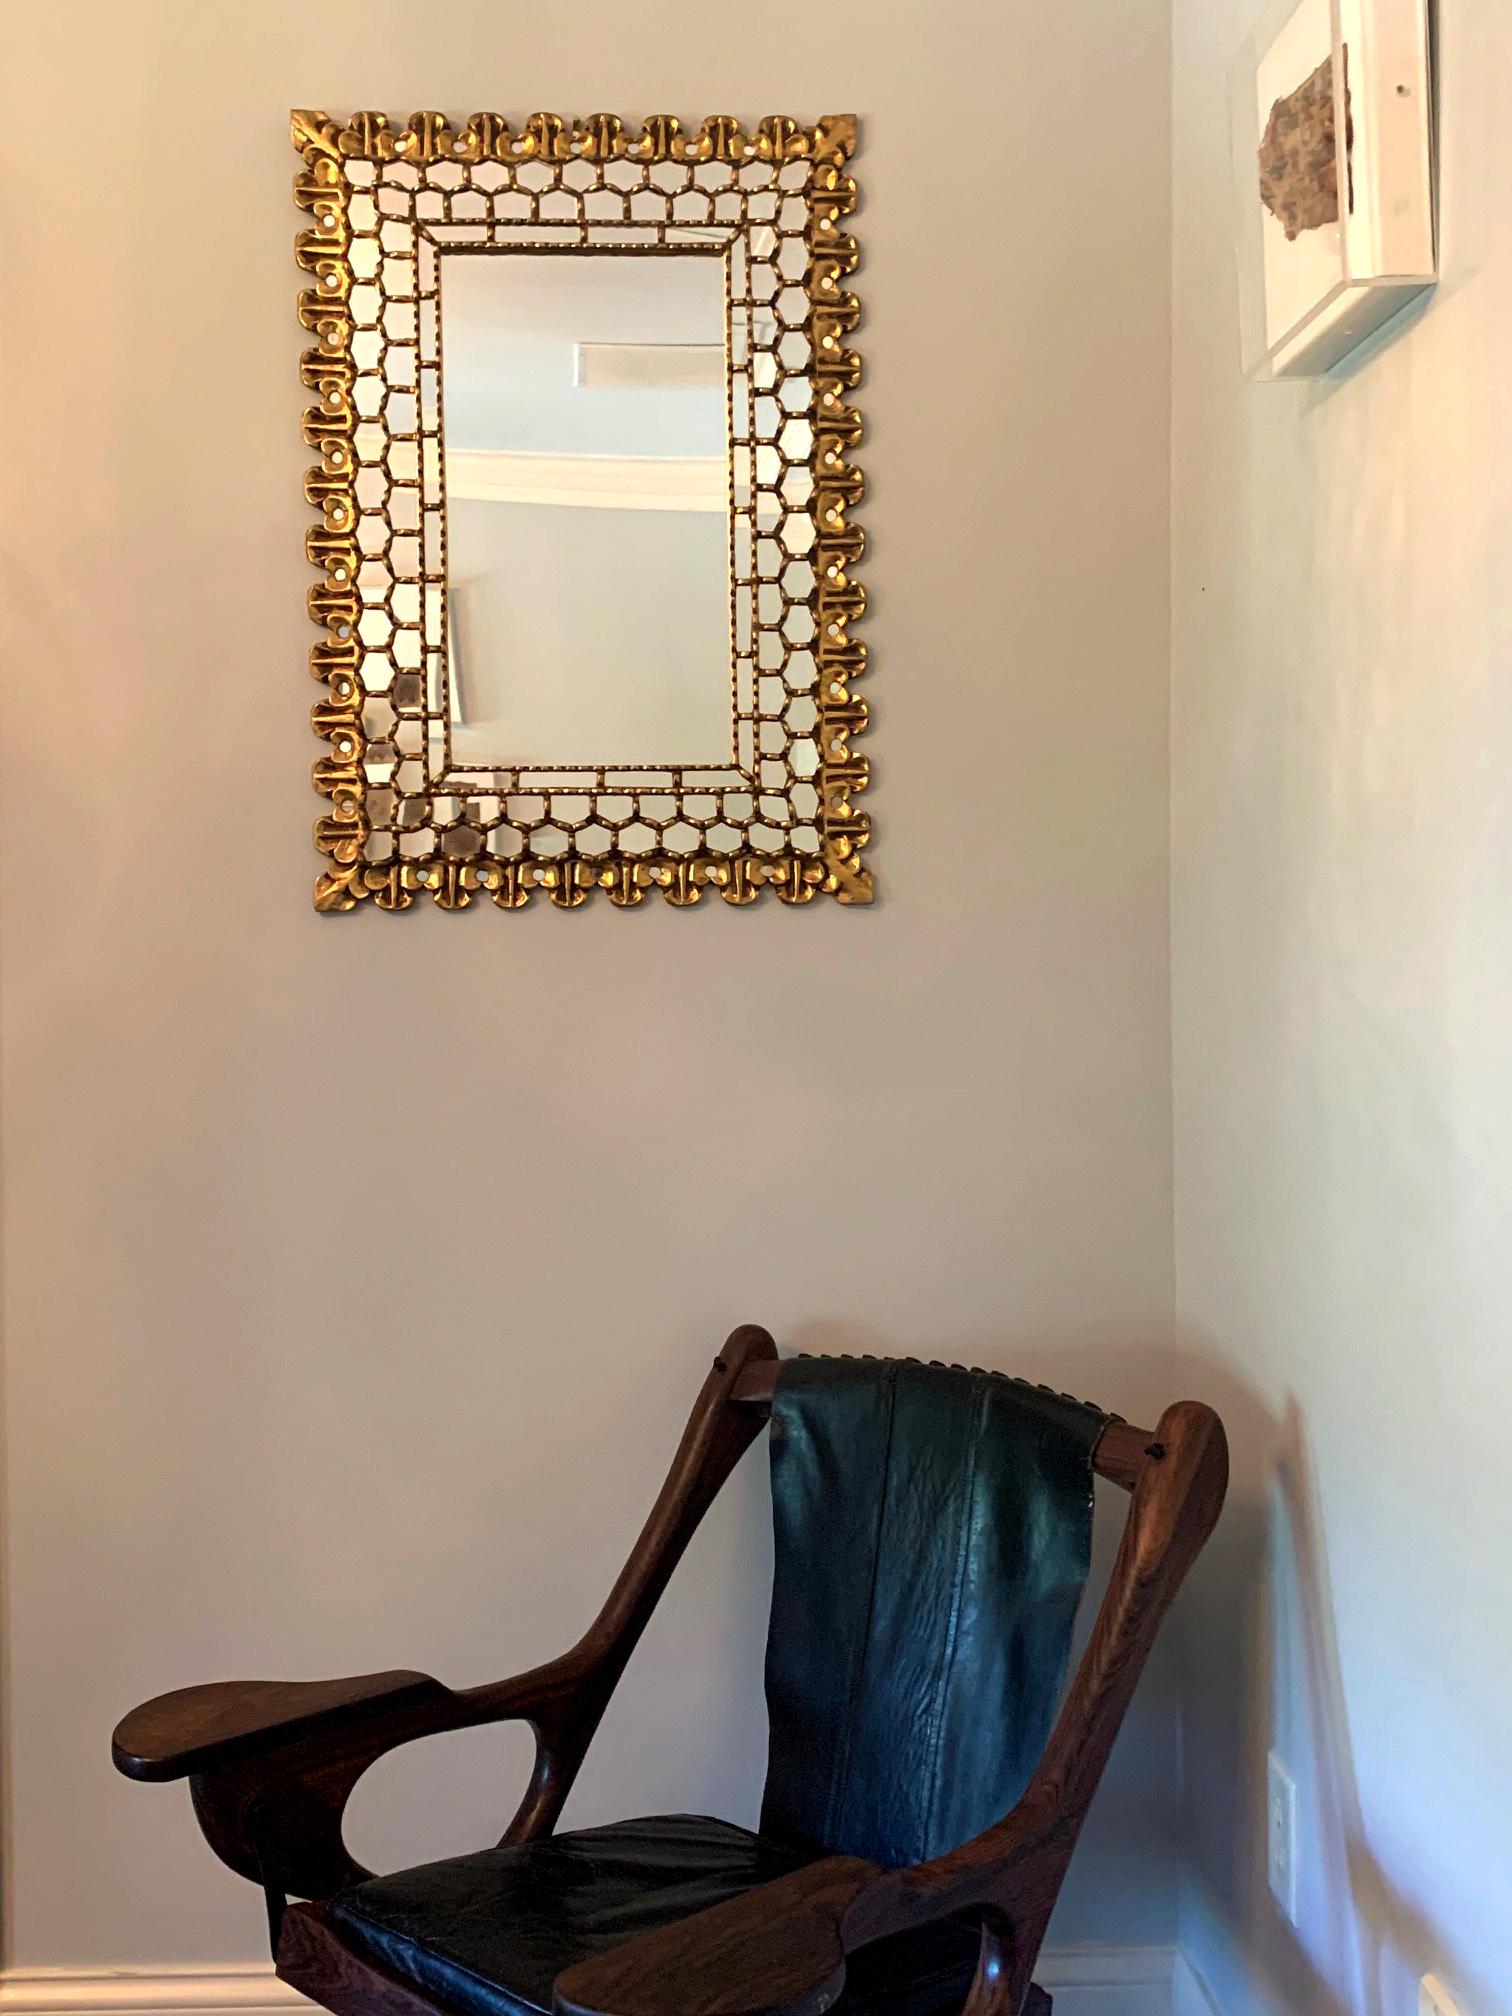 Miroir mural en bois sculpté d'origine Coloni espagnole, fin du 19e siècle ou début du 20e siècle.
Le cadre doré a été sculpté dans du bois massif et présente des motifs de fleurs de lys dans les coins et trois anneaux de panneaux miroirs complexes